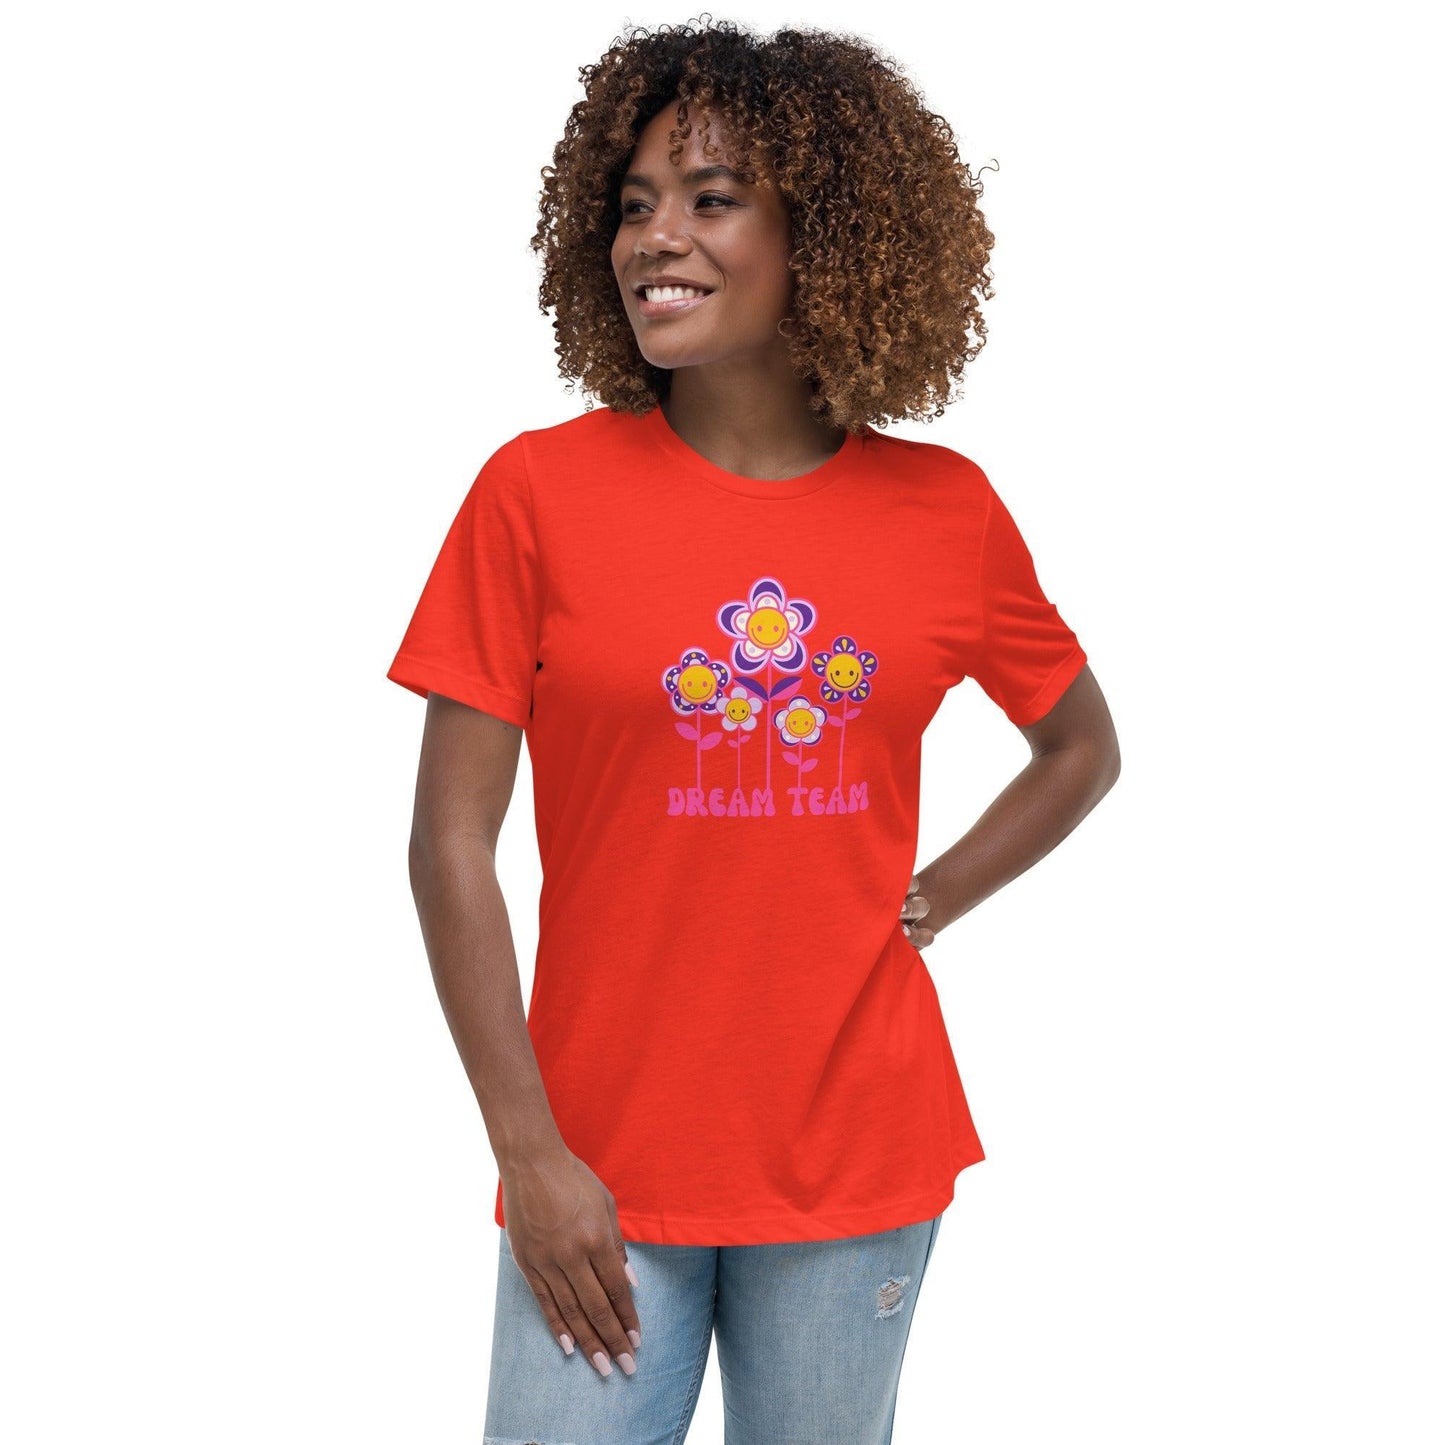 Camiseta suelta "Dream Team" | ¡La camiseta perfecta para celebrar tus sueños! - Silvornique